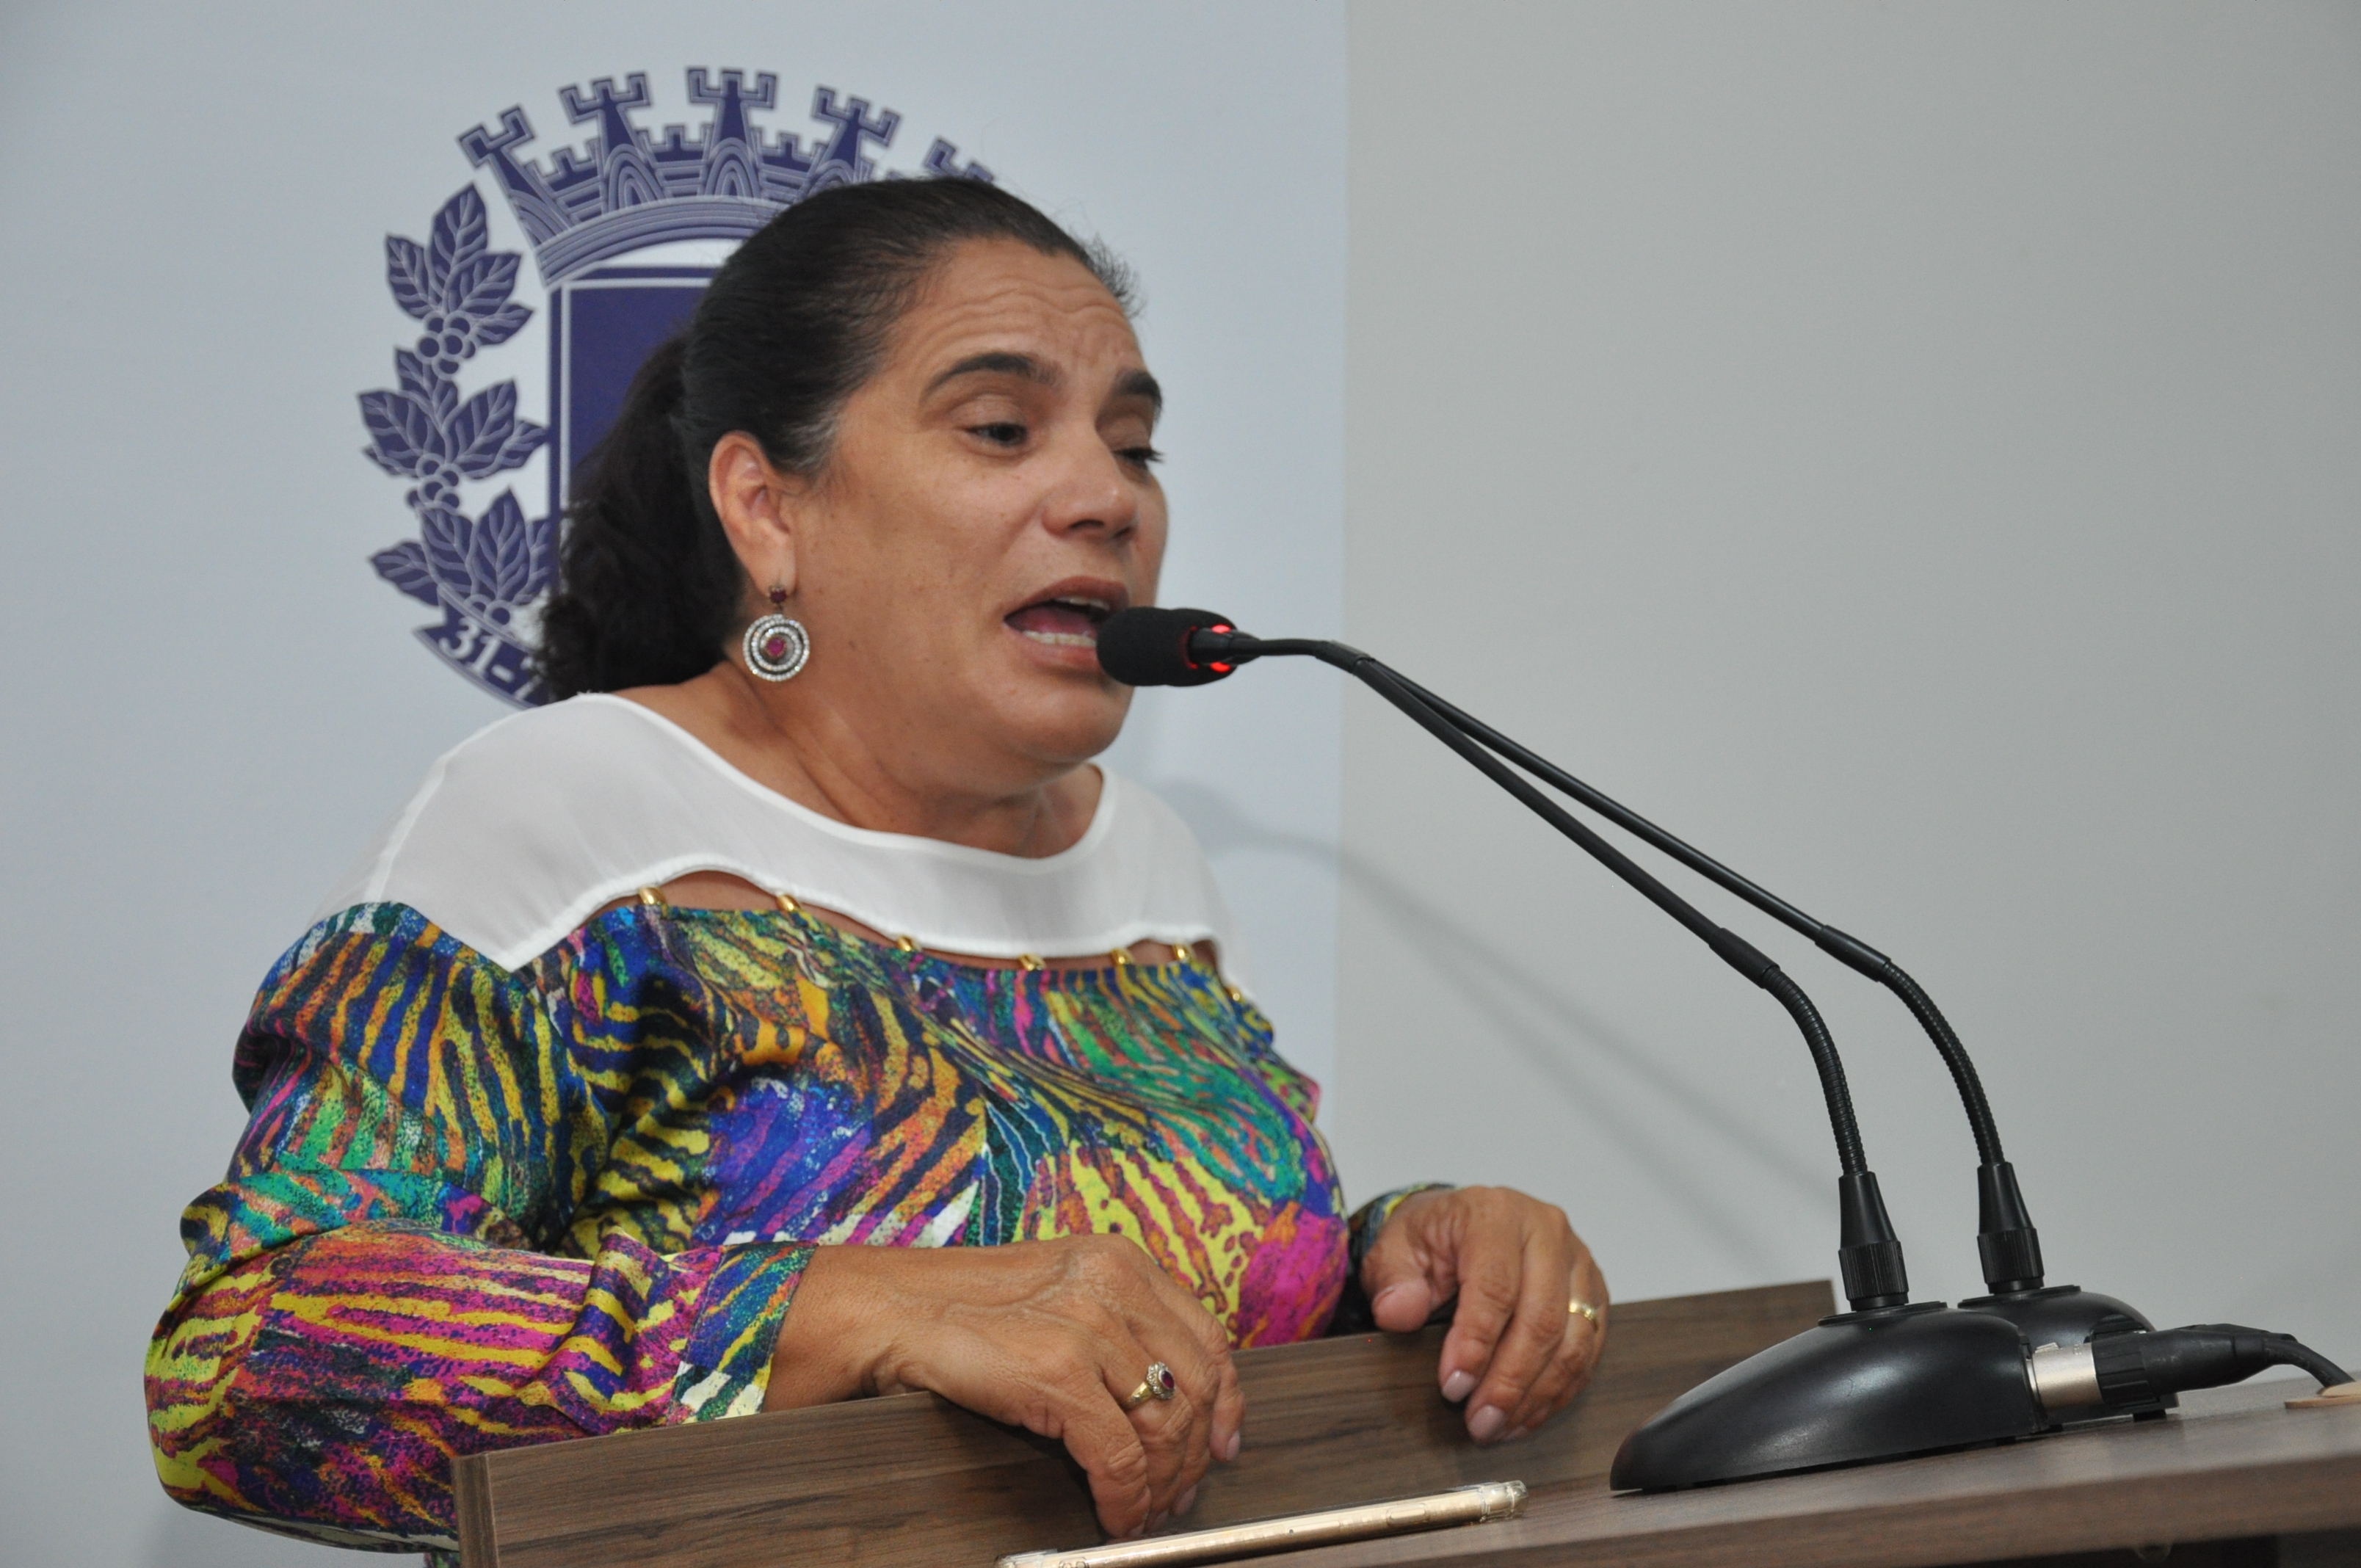 Professora Geli presta homenagem aos diretores de escola: “têm responsabilidades extraordinárias”